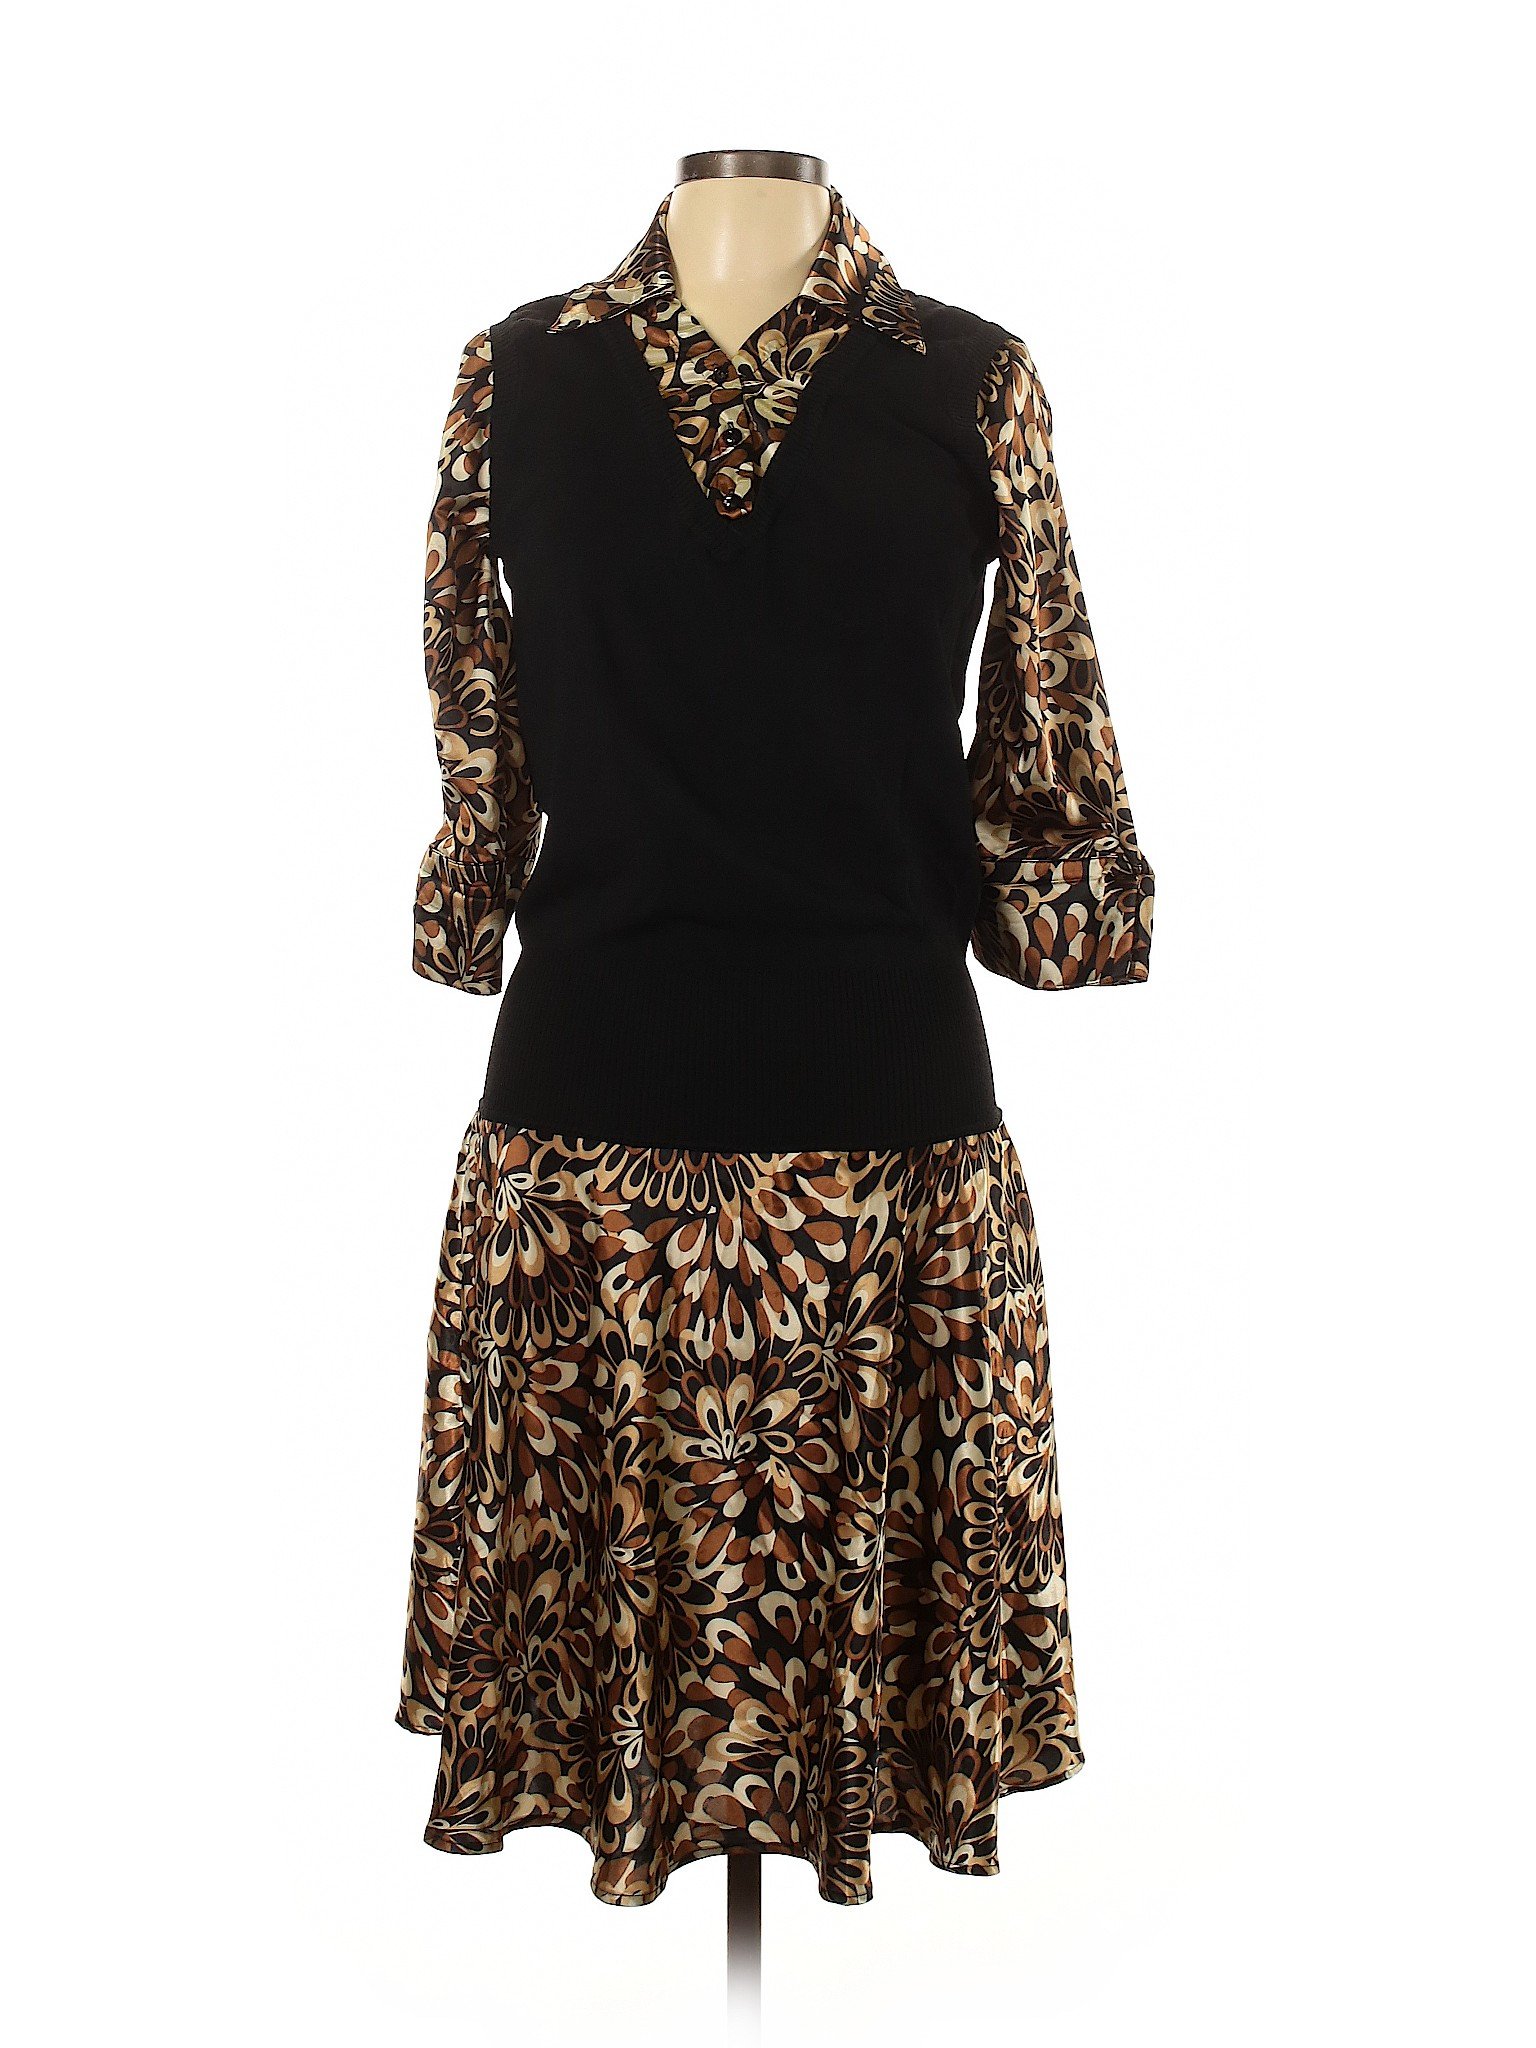 DressBarn Women Black Casual Dress L | eBay